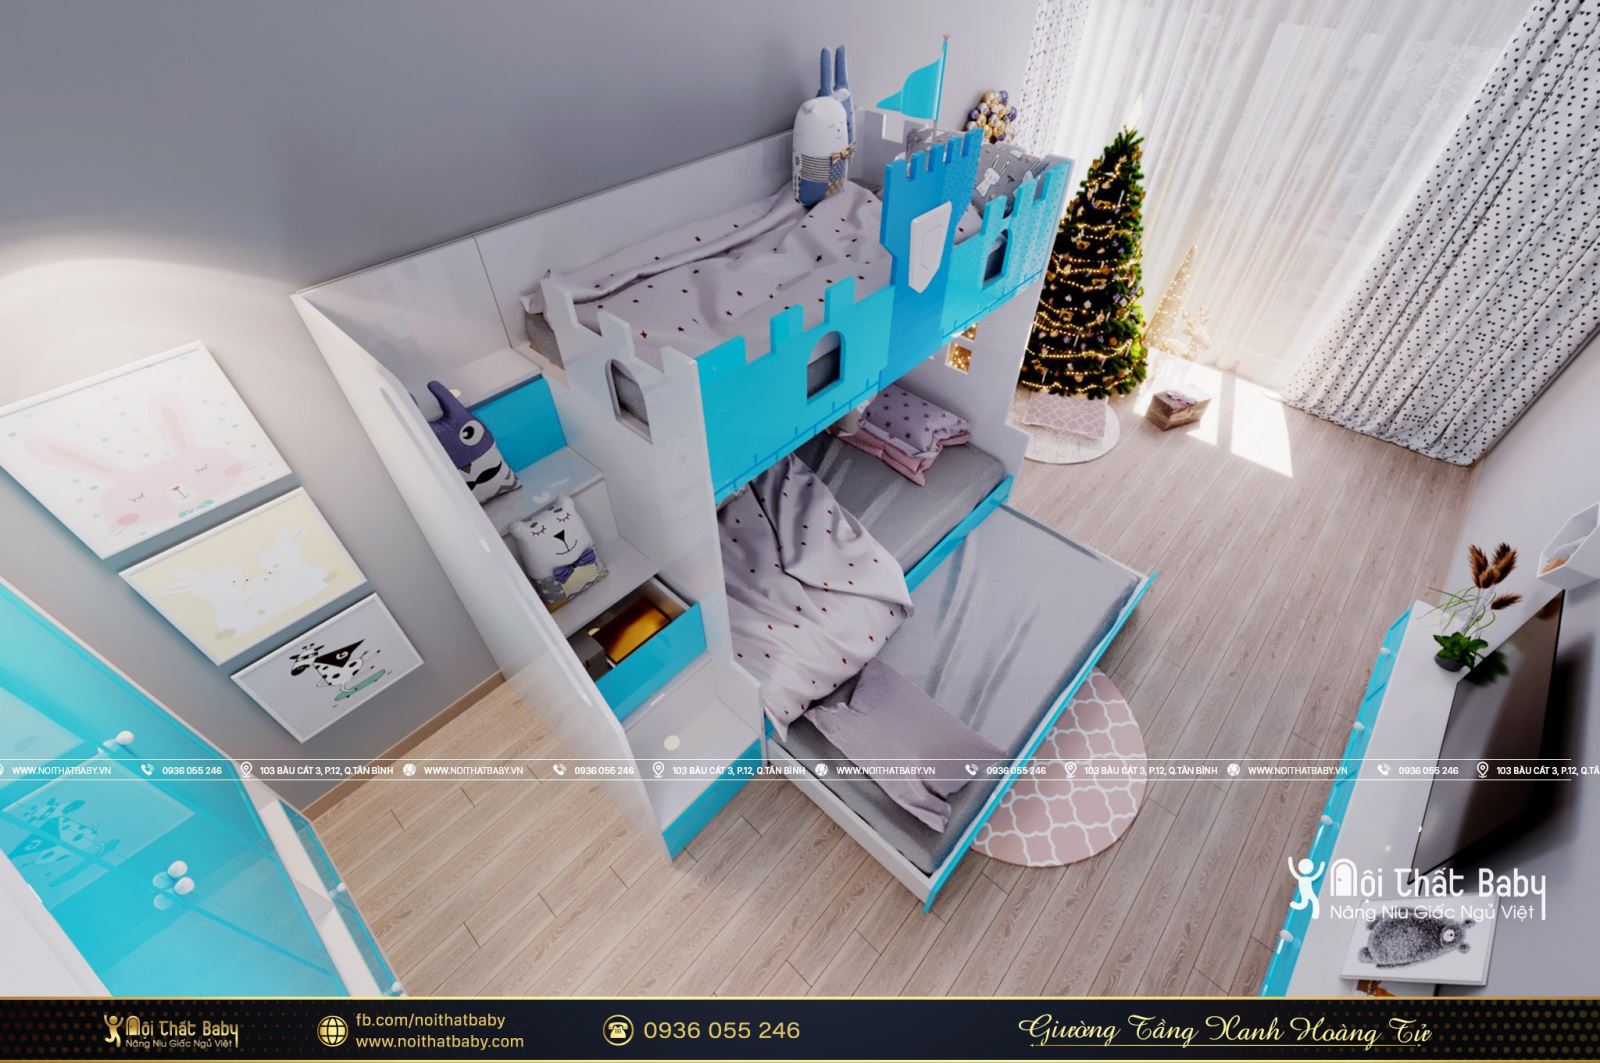 Mẫu giường tầng xanh hoàng tử năm 2021